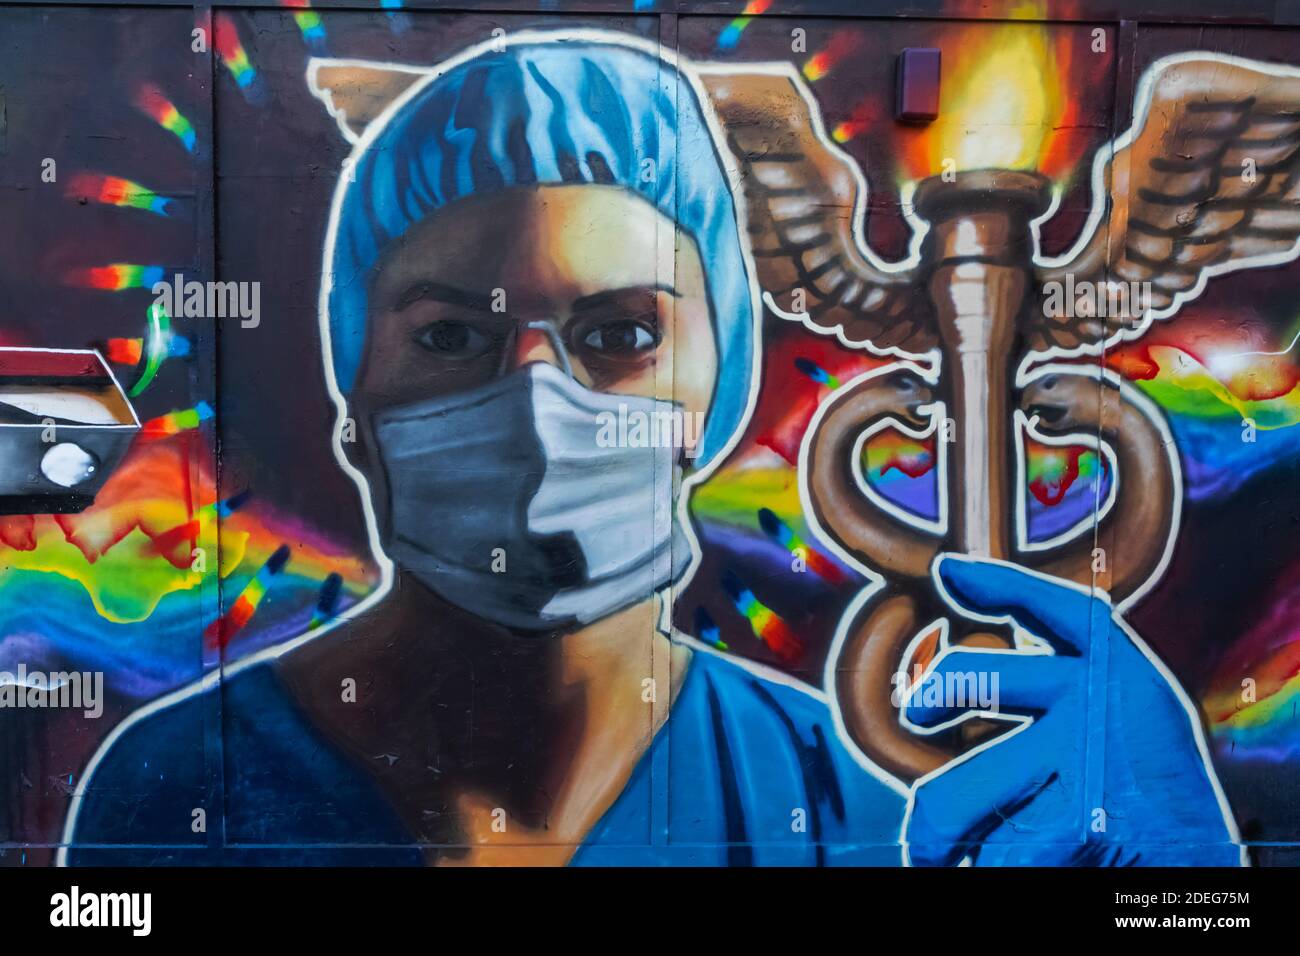 Angleterre, Londres, art mural représentant une infirmière portant un masque facial Banque D'Images